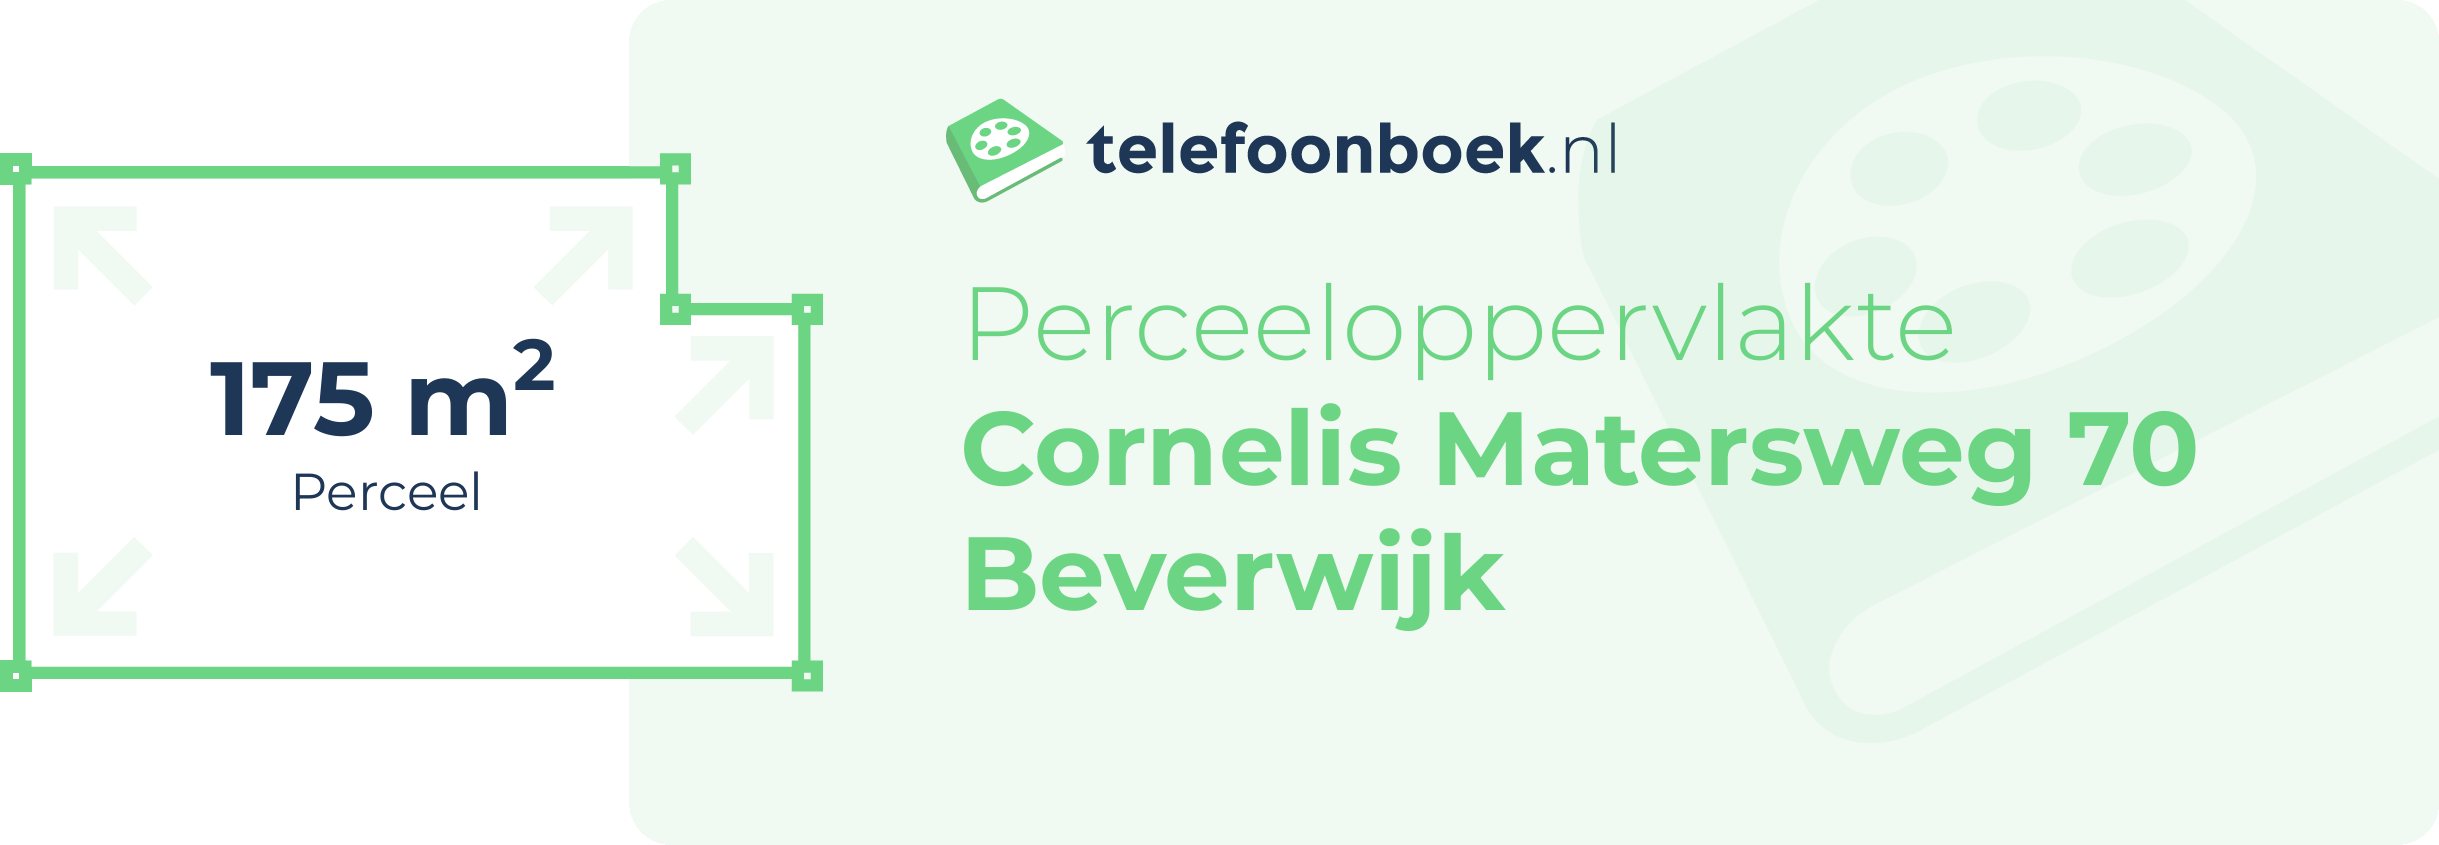 Perceeloppervlakte Cornelis Matersweg 70 Beverwijk